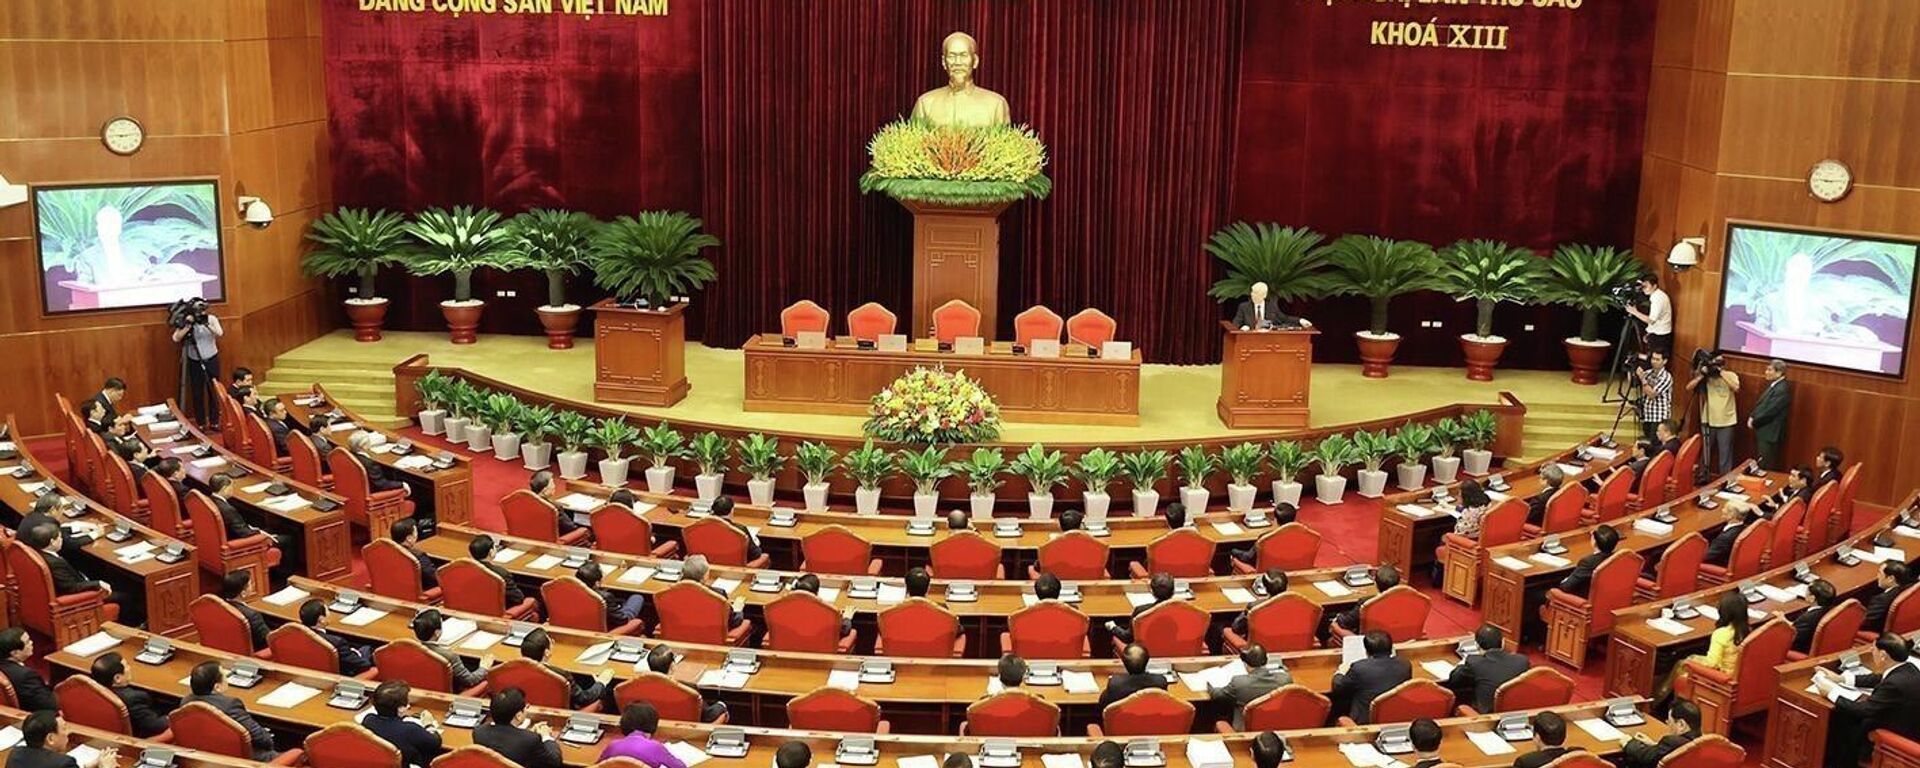 Bế mạc Hội nghị lần thứ sáu Ban Chấp hành Trung ương Đảng Cộng sản Việt Nam khóa XIII  - Sputnik Việt Nam, 1920, 12.10.2022